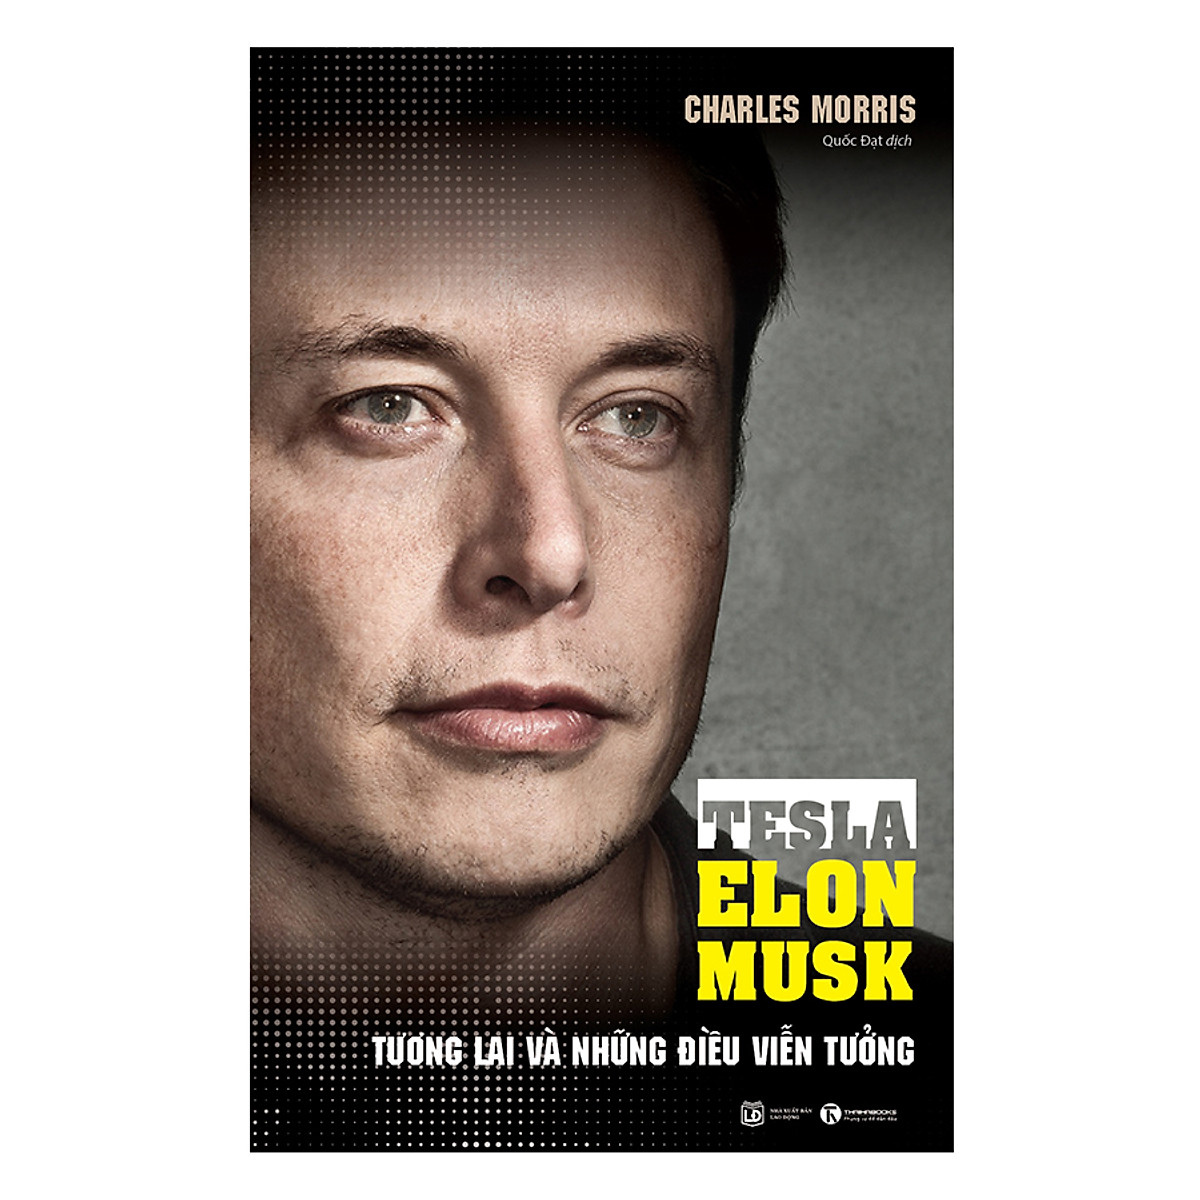 Tesla - Elon Musk Tương lai và những điều viễn tưởng